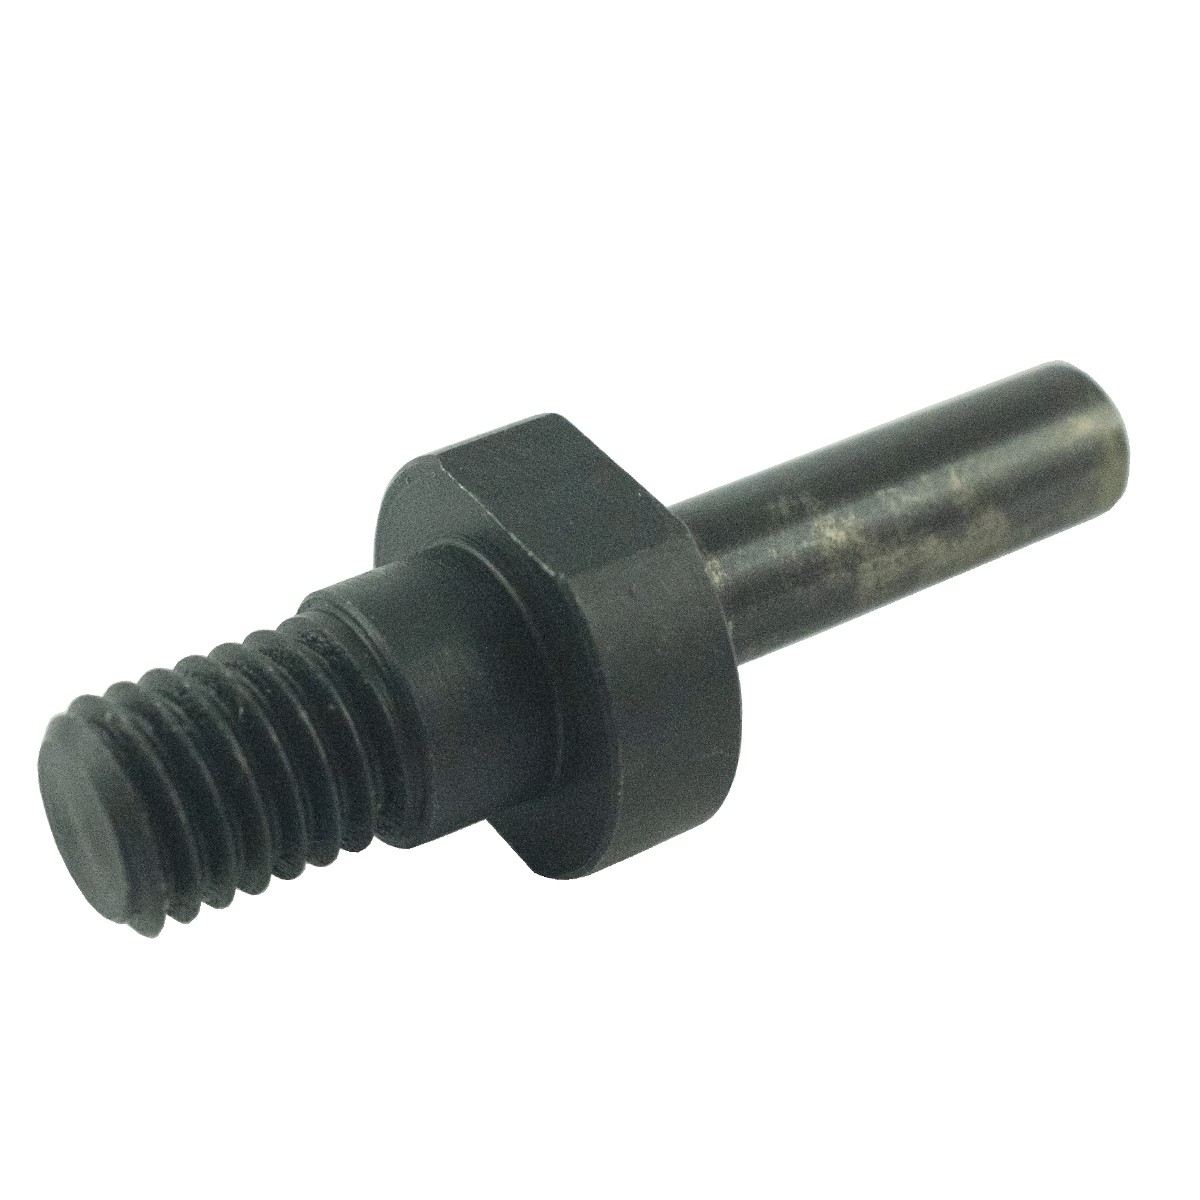 M8 x 1.25 screw, LS MT1.25 pin / TRG822 / 40438703